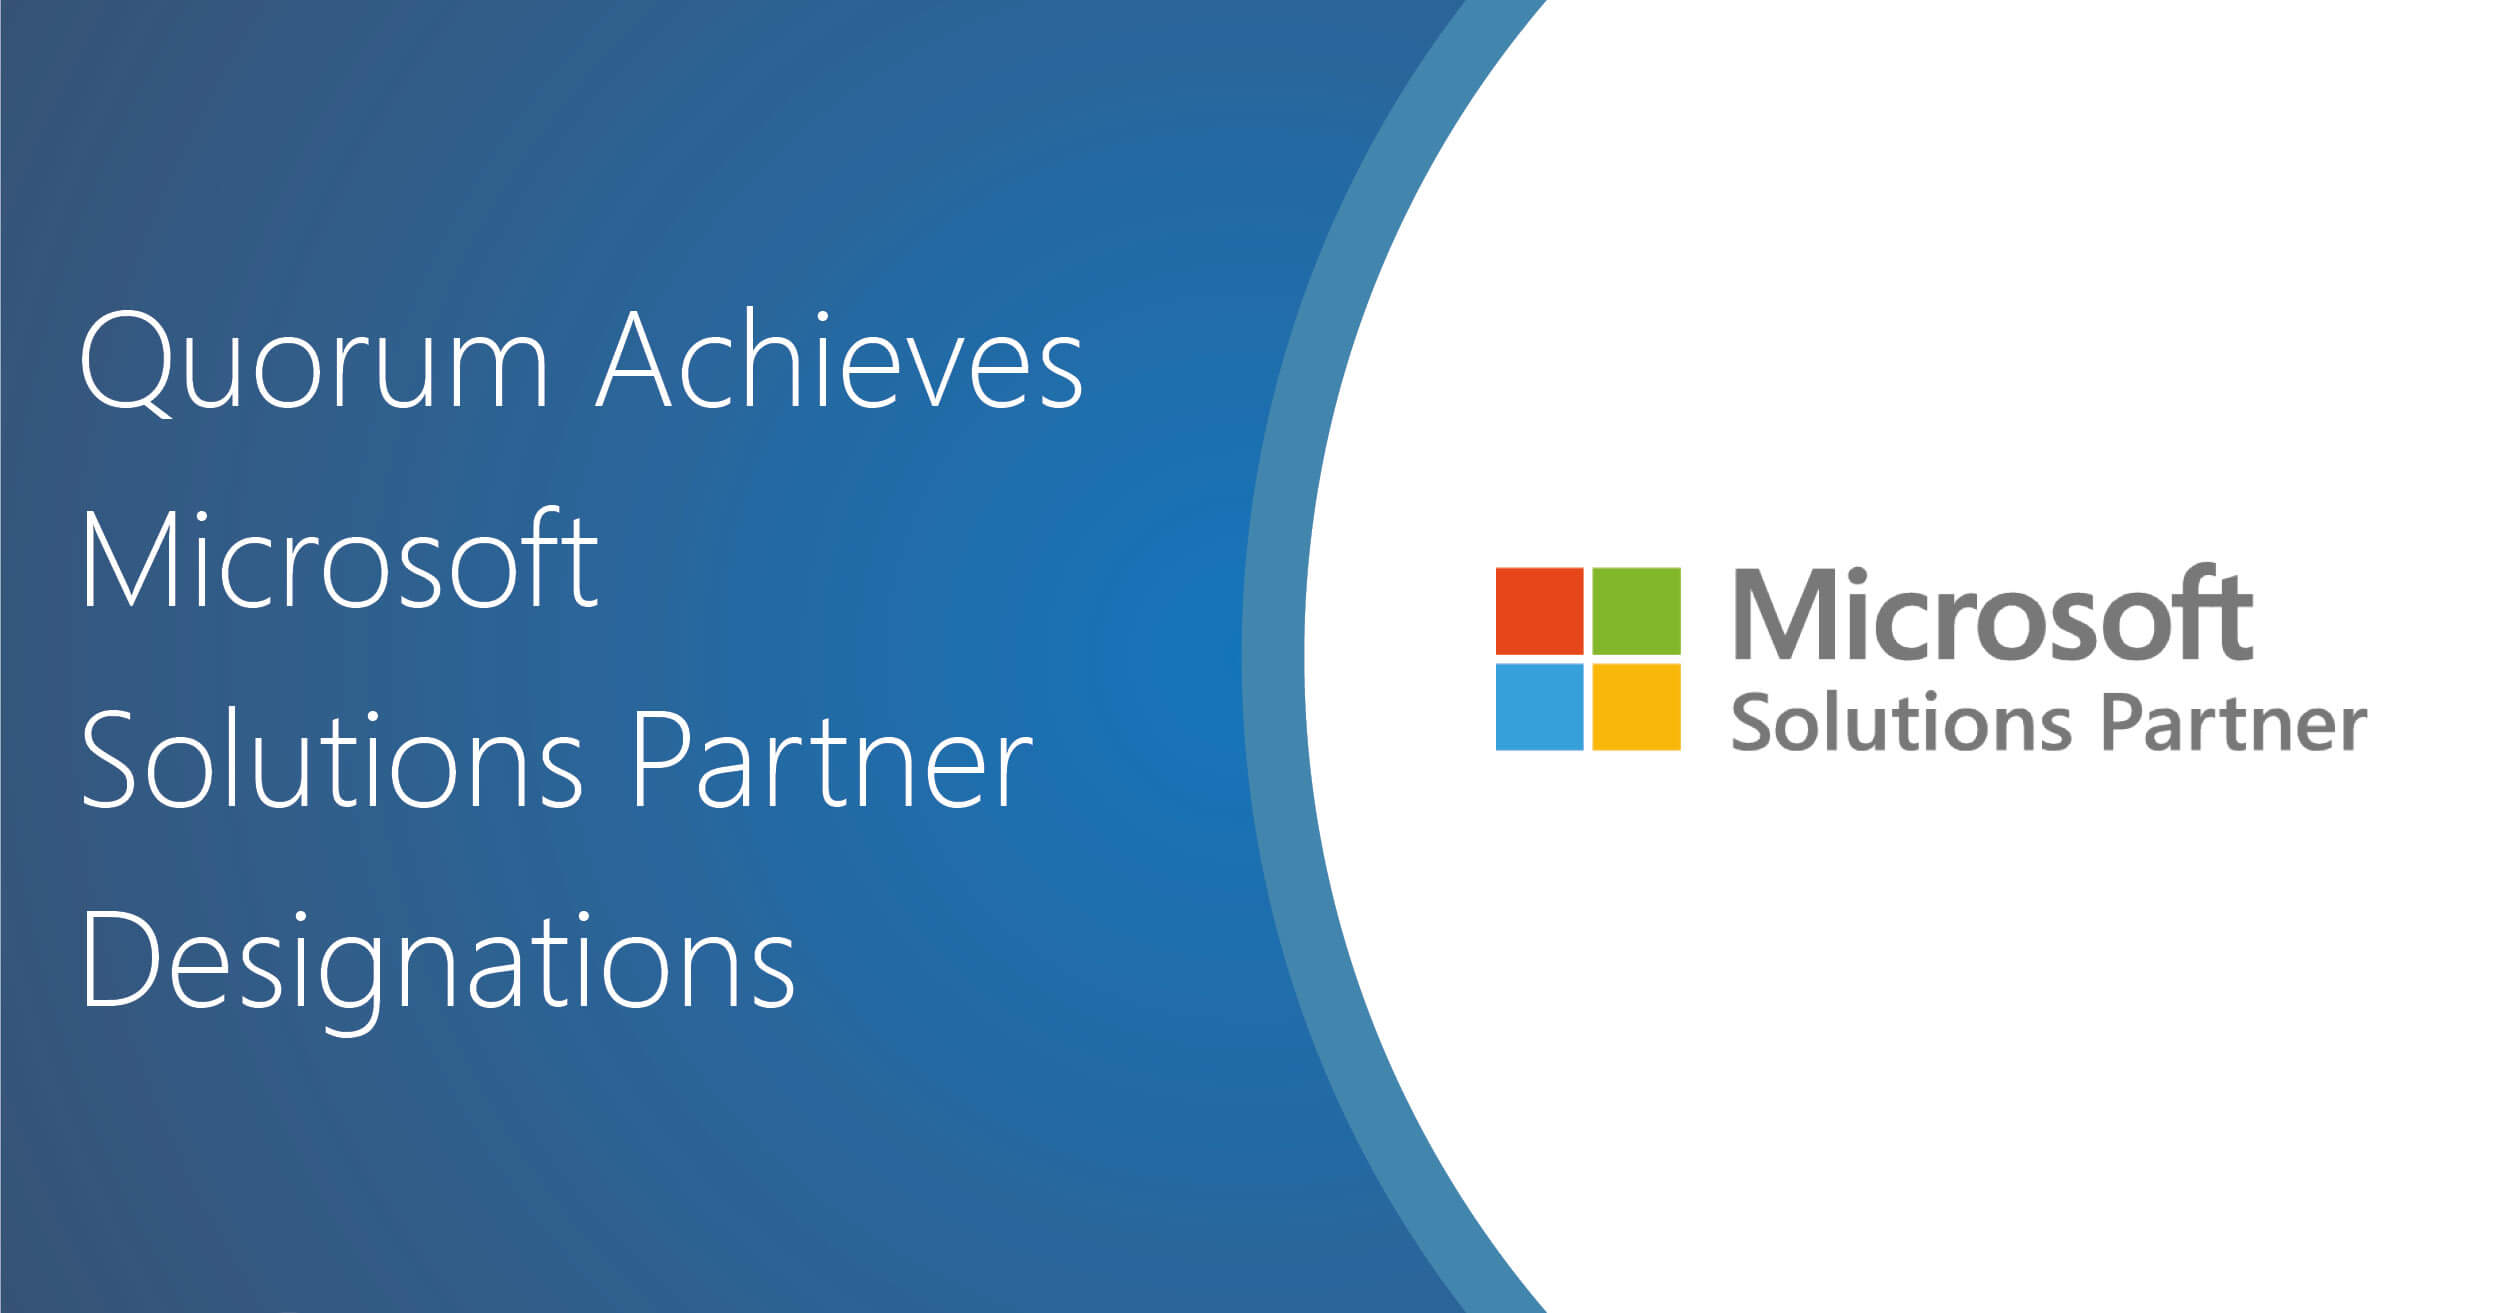 Microsoft Solutions Partner Social Media